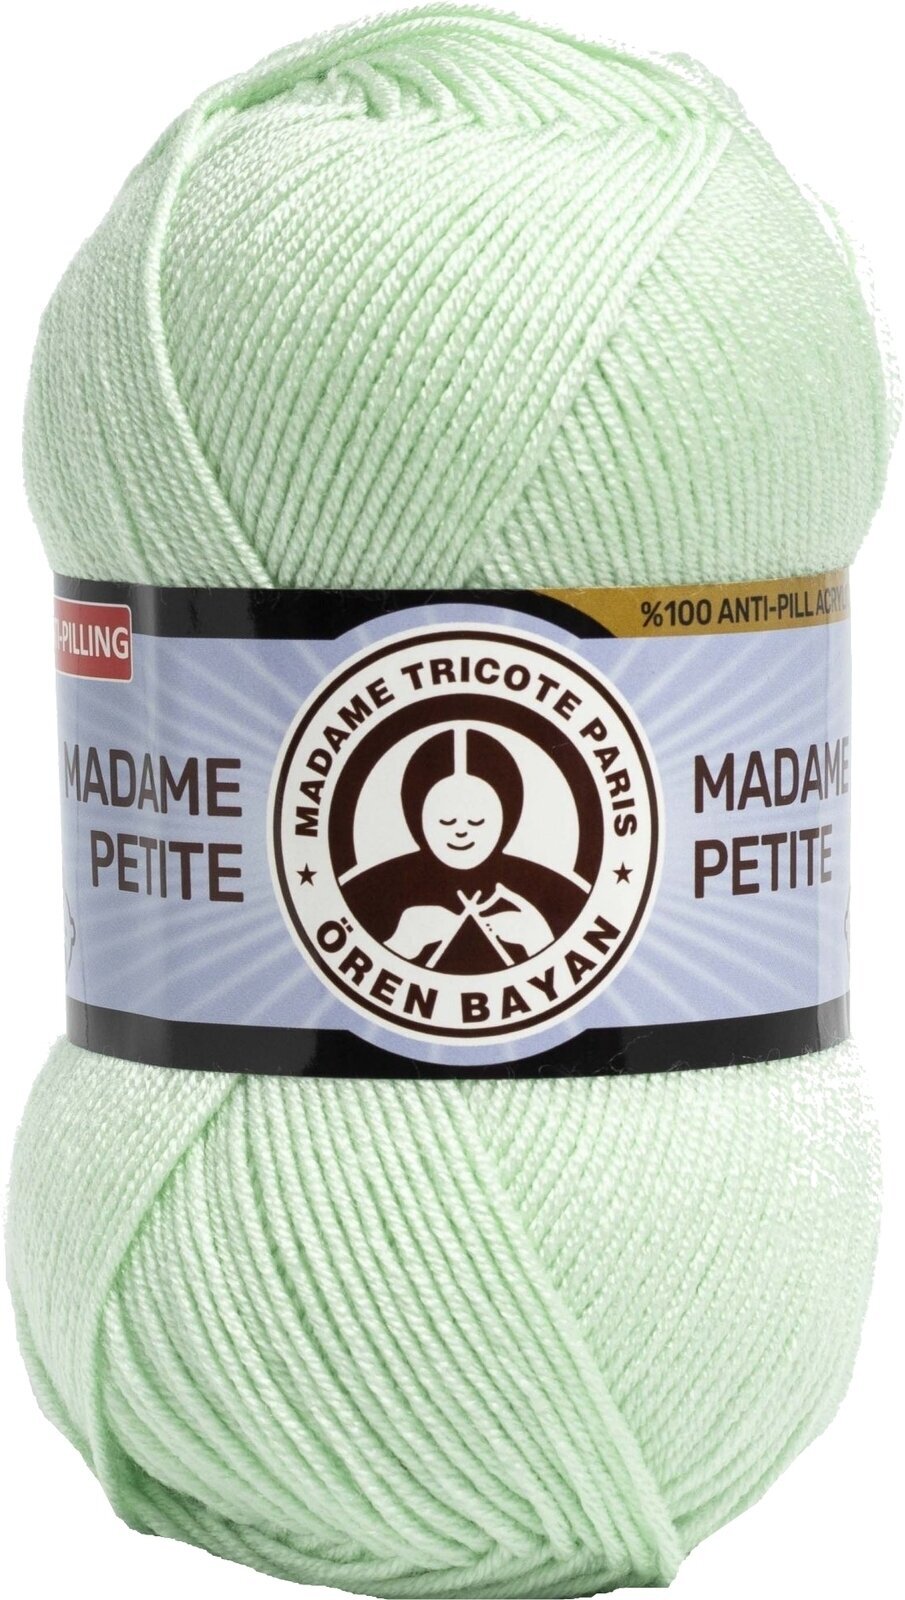 Przędza dziewiarska Madame Tricote Paris Madame Petite 3848 90 Przędza dziewiarska